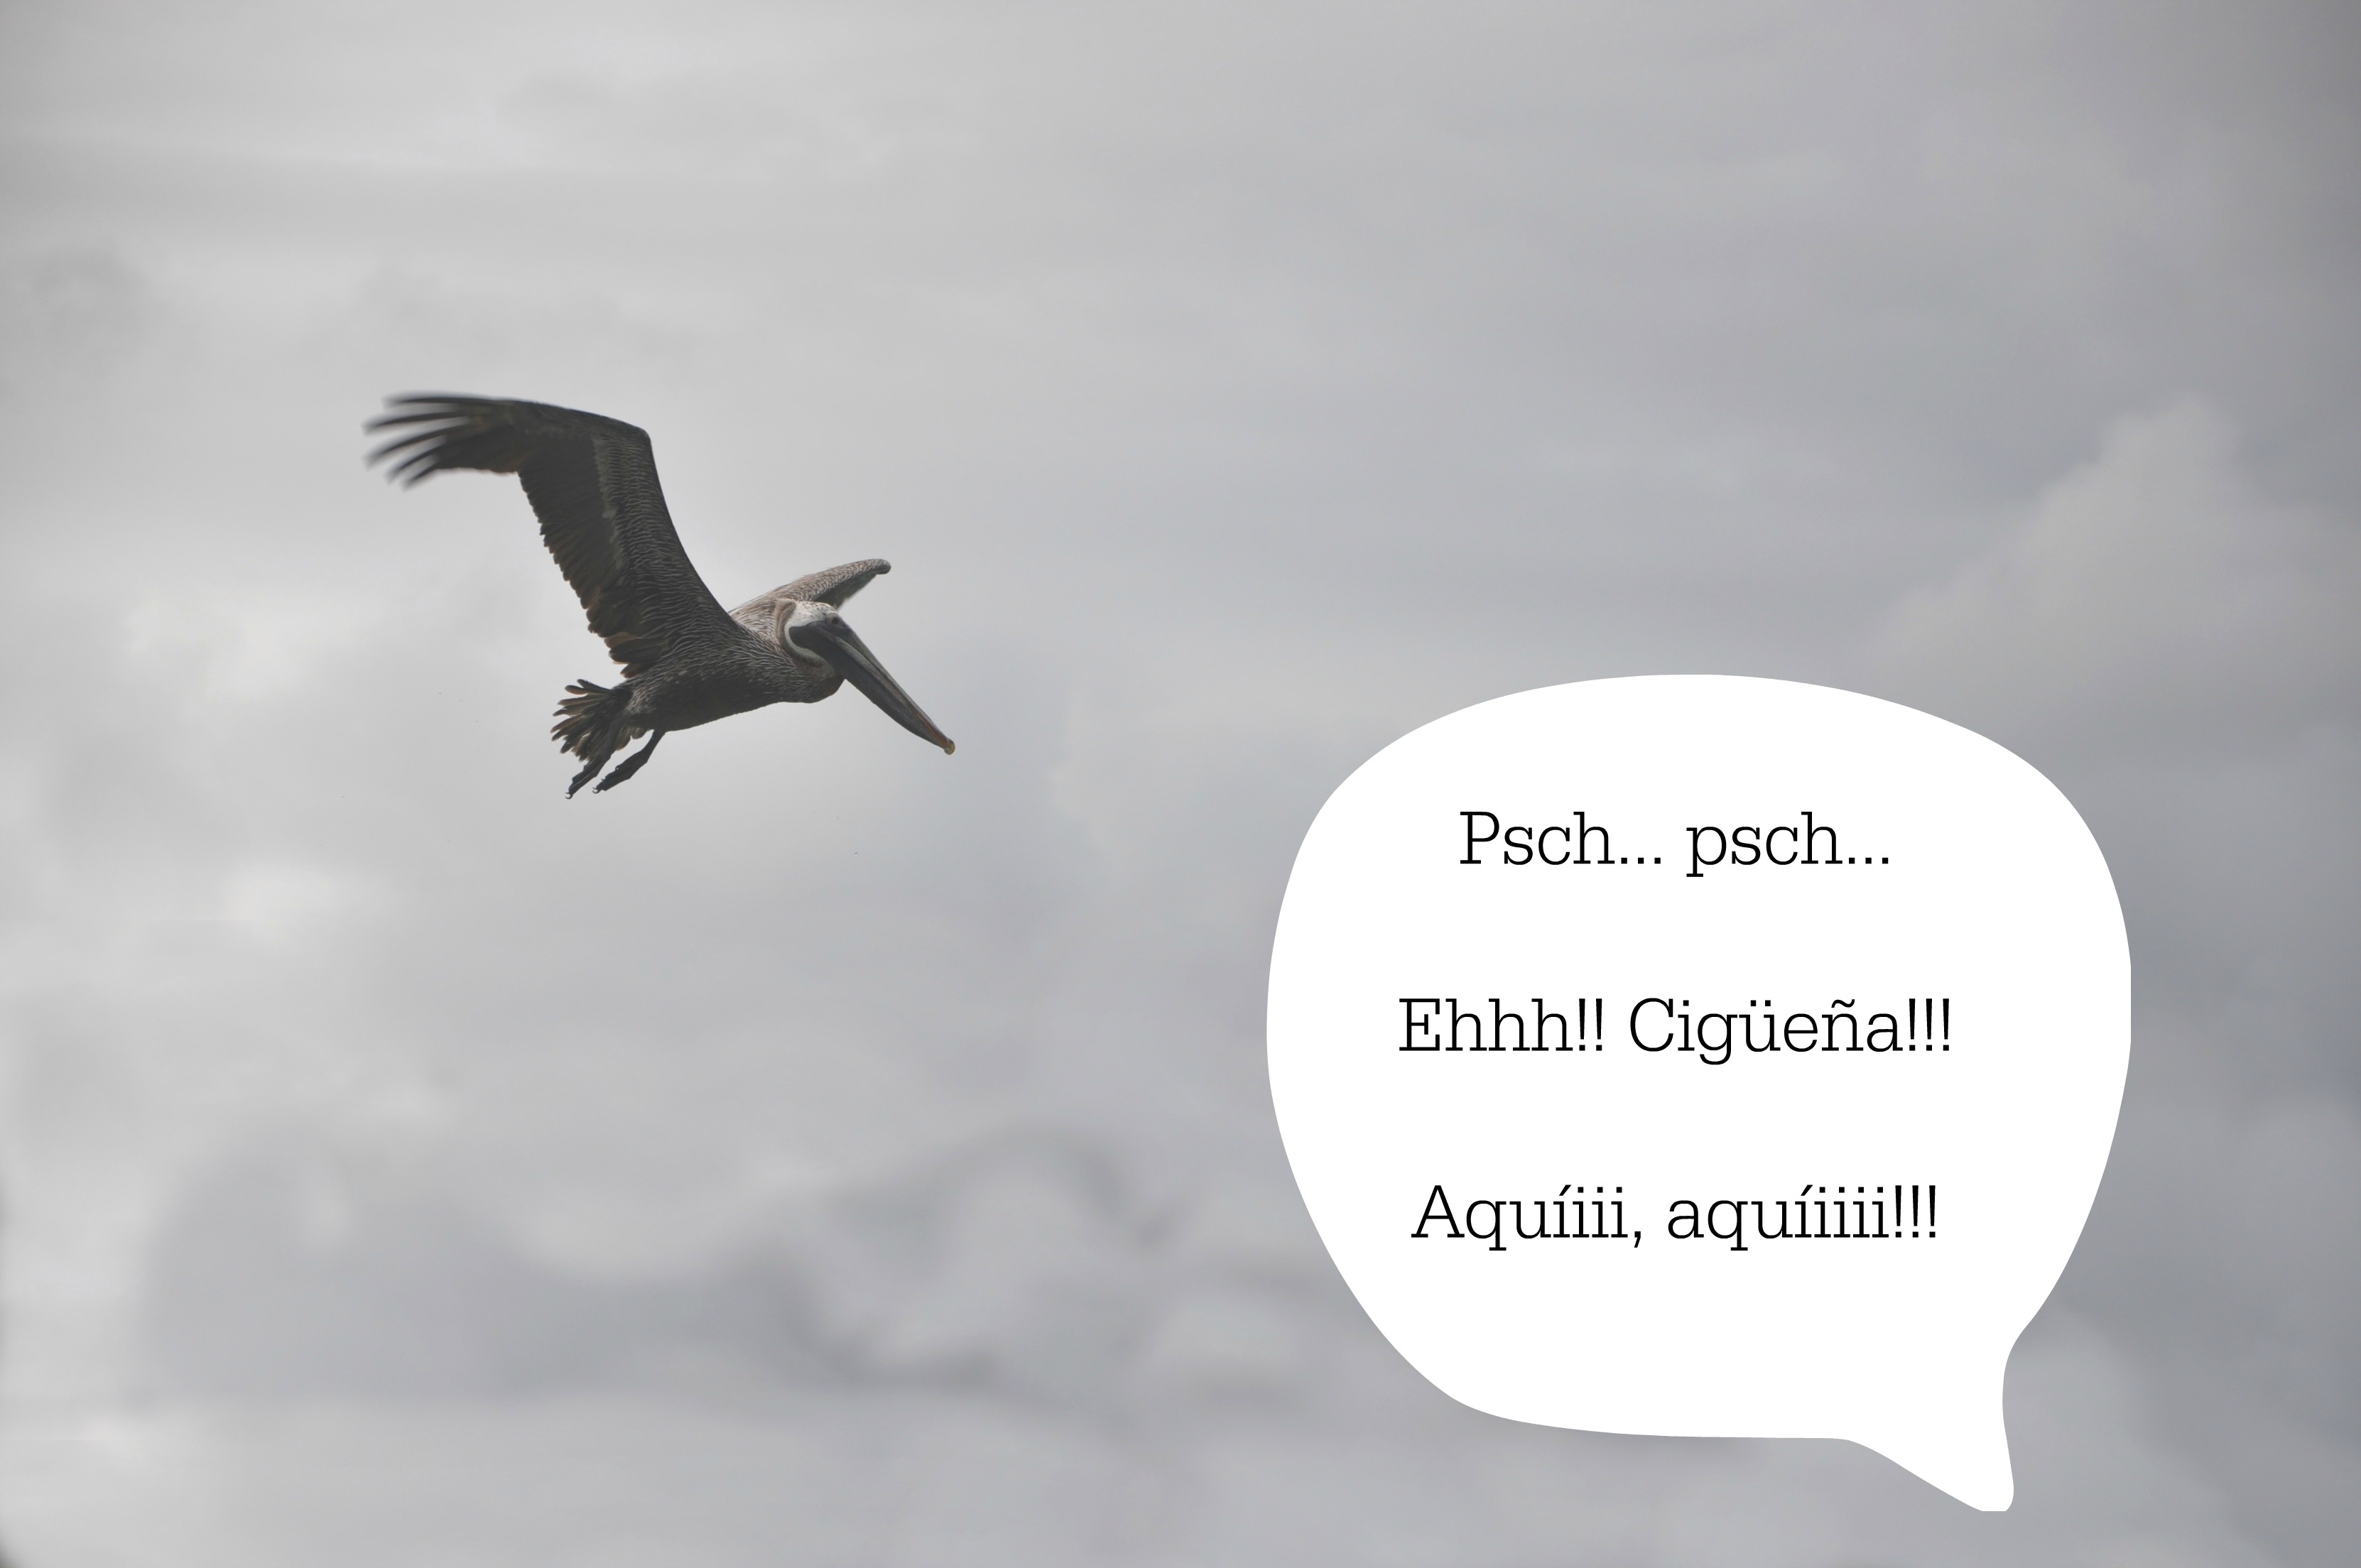 stork cigueña eidtado